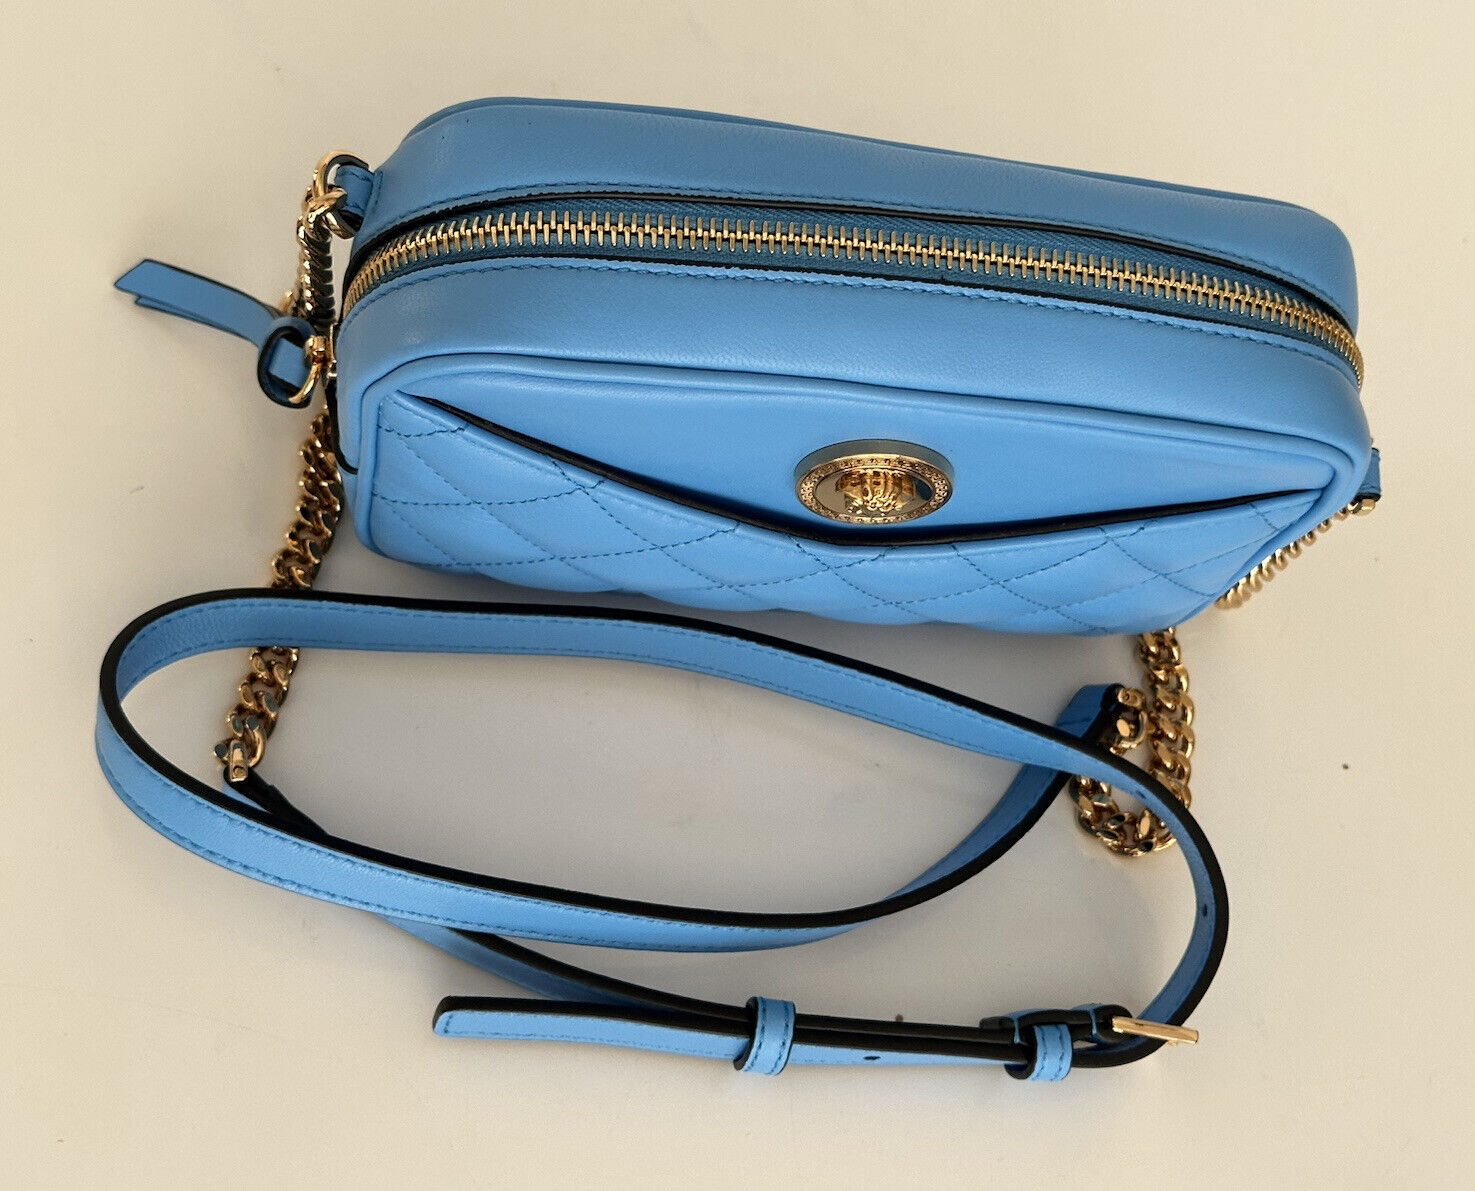 NWT $1195 Versace Маленькая синяя стеганая сумка из кожи ягненка 1008827 Италия 